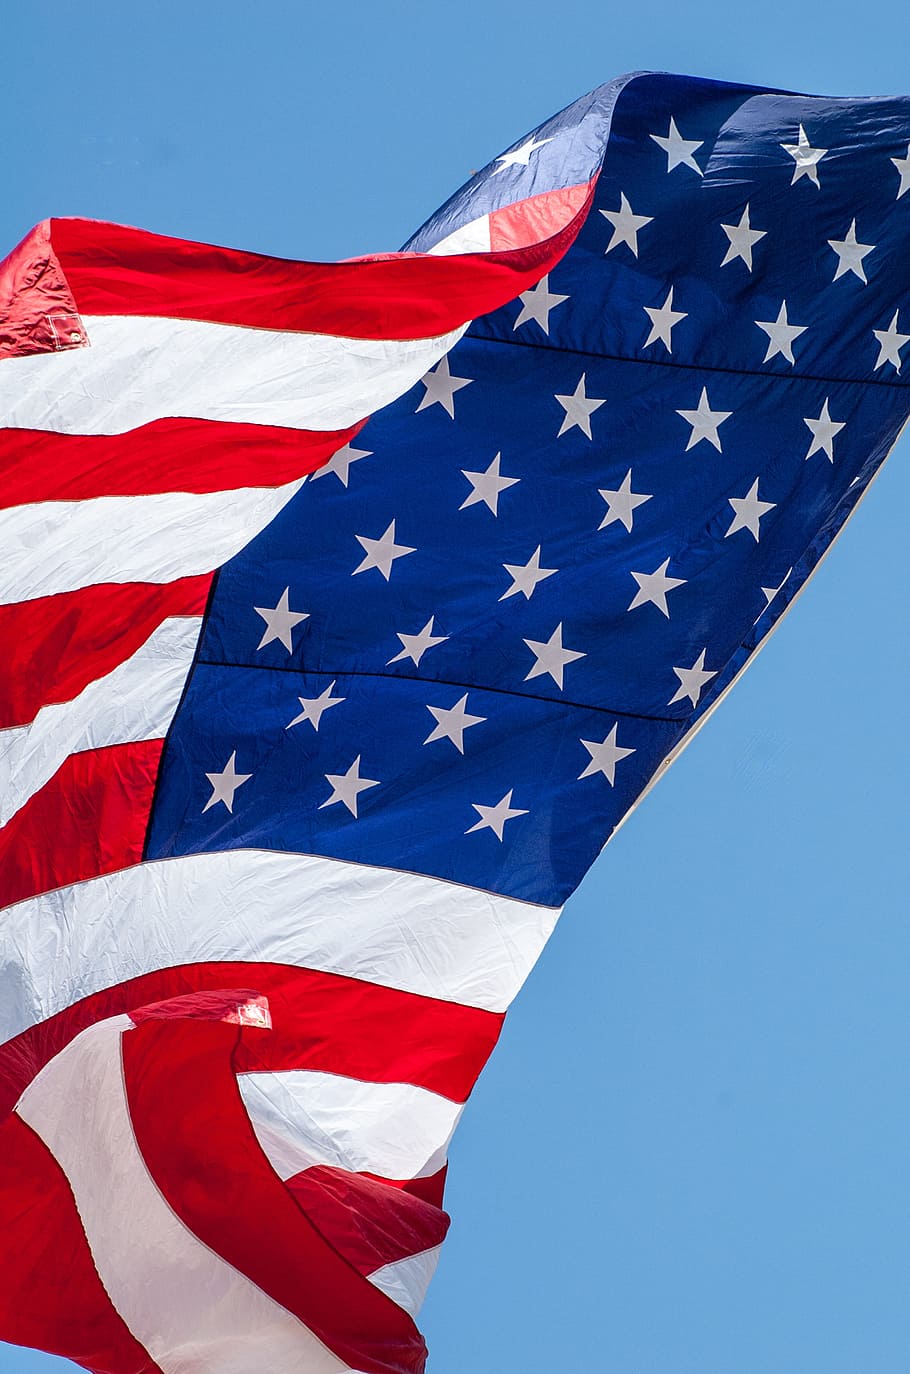 bandera de estados unidos, ondeando, durante el día, bandera estadounidense, bandera ondeando, bandera, bandera estadounidense ondeando, estadounidense, estados unidos, azul